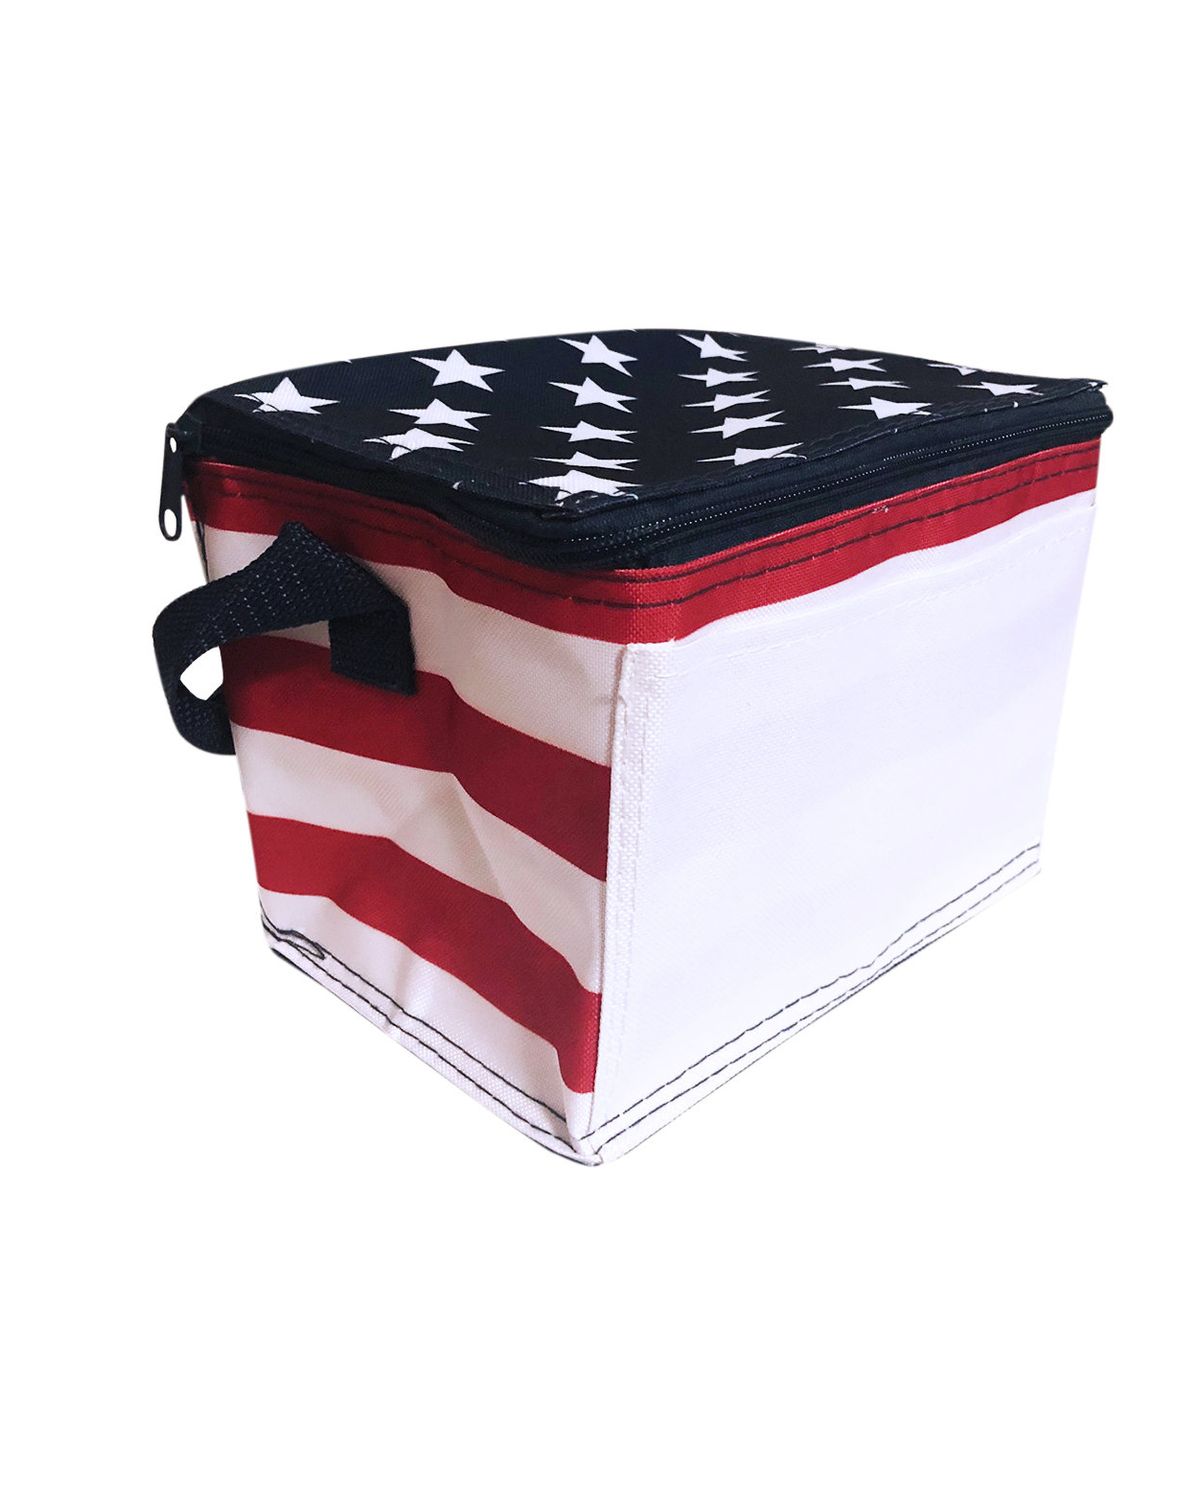 'Liberty Bags OAD5051 OAD Americana Cooler'